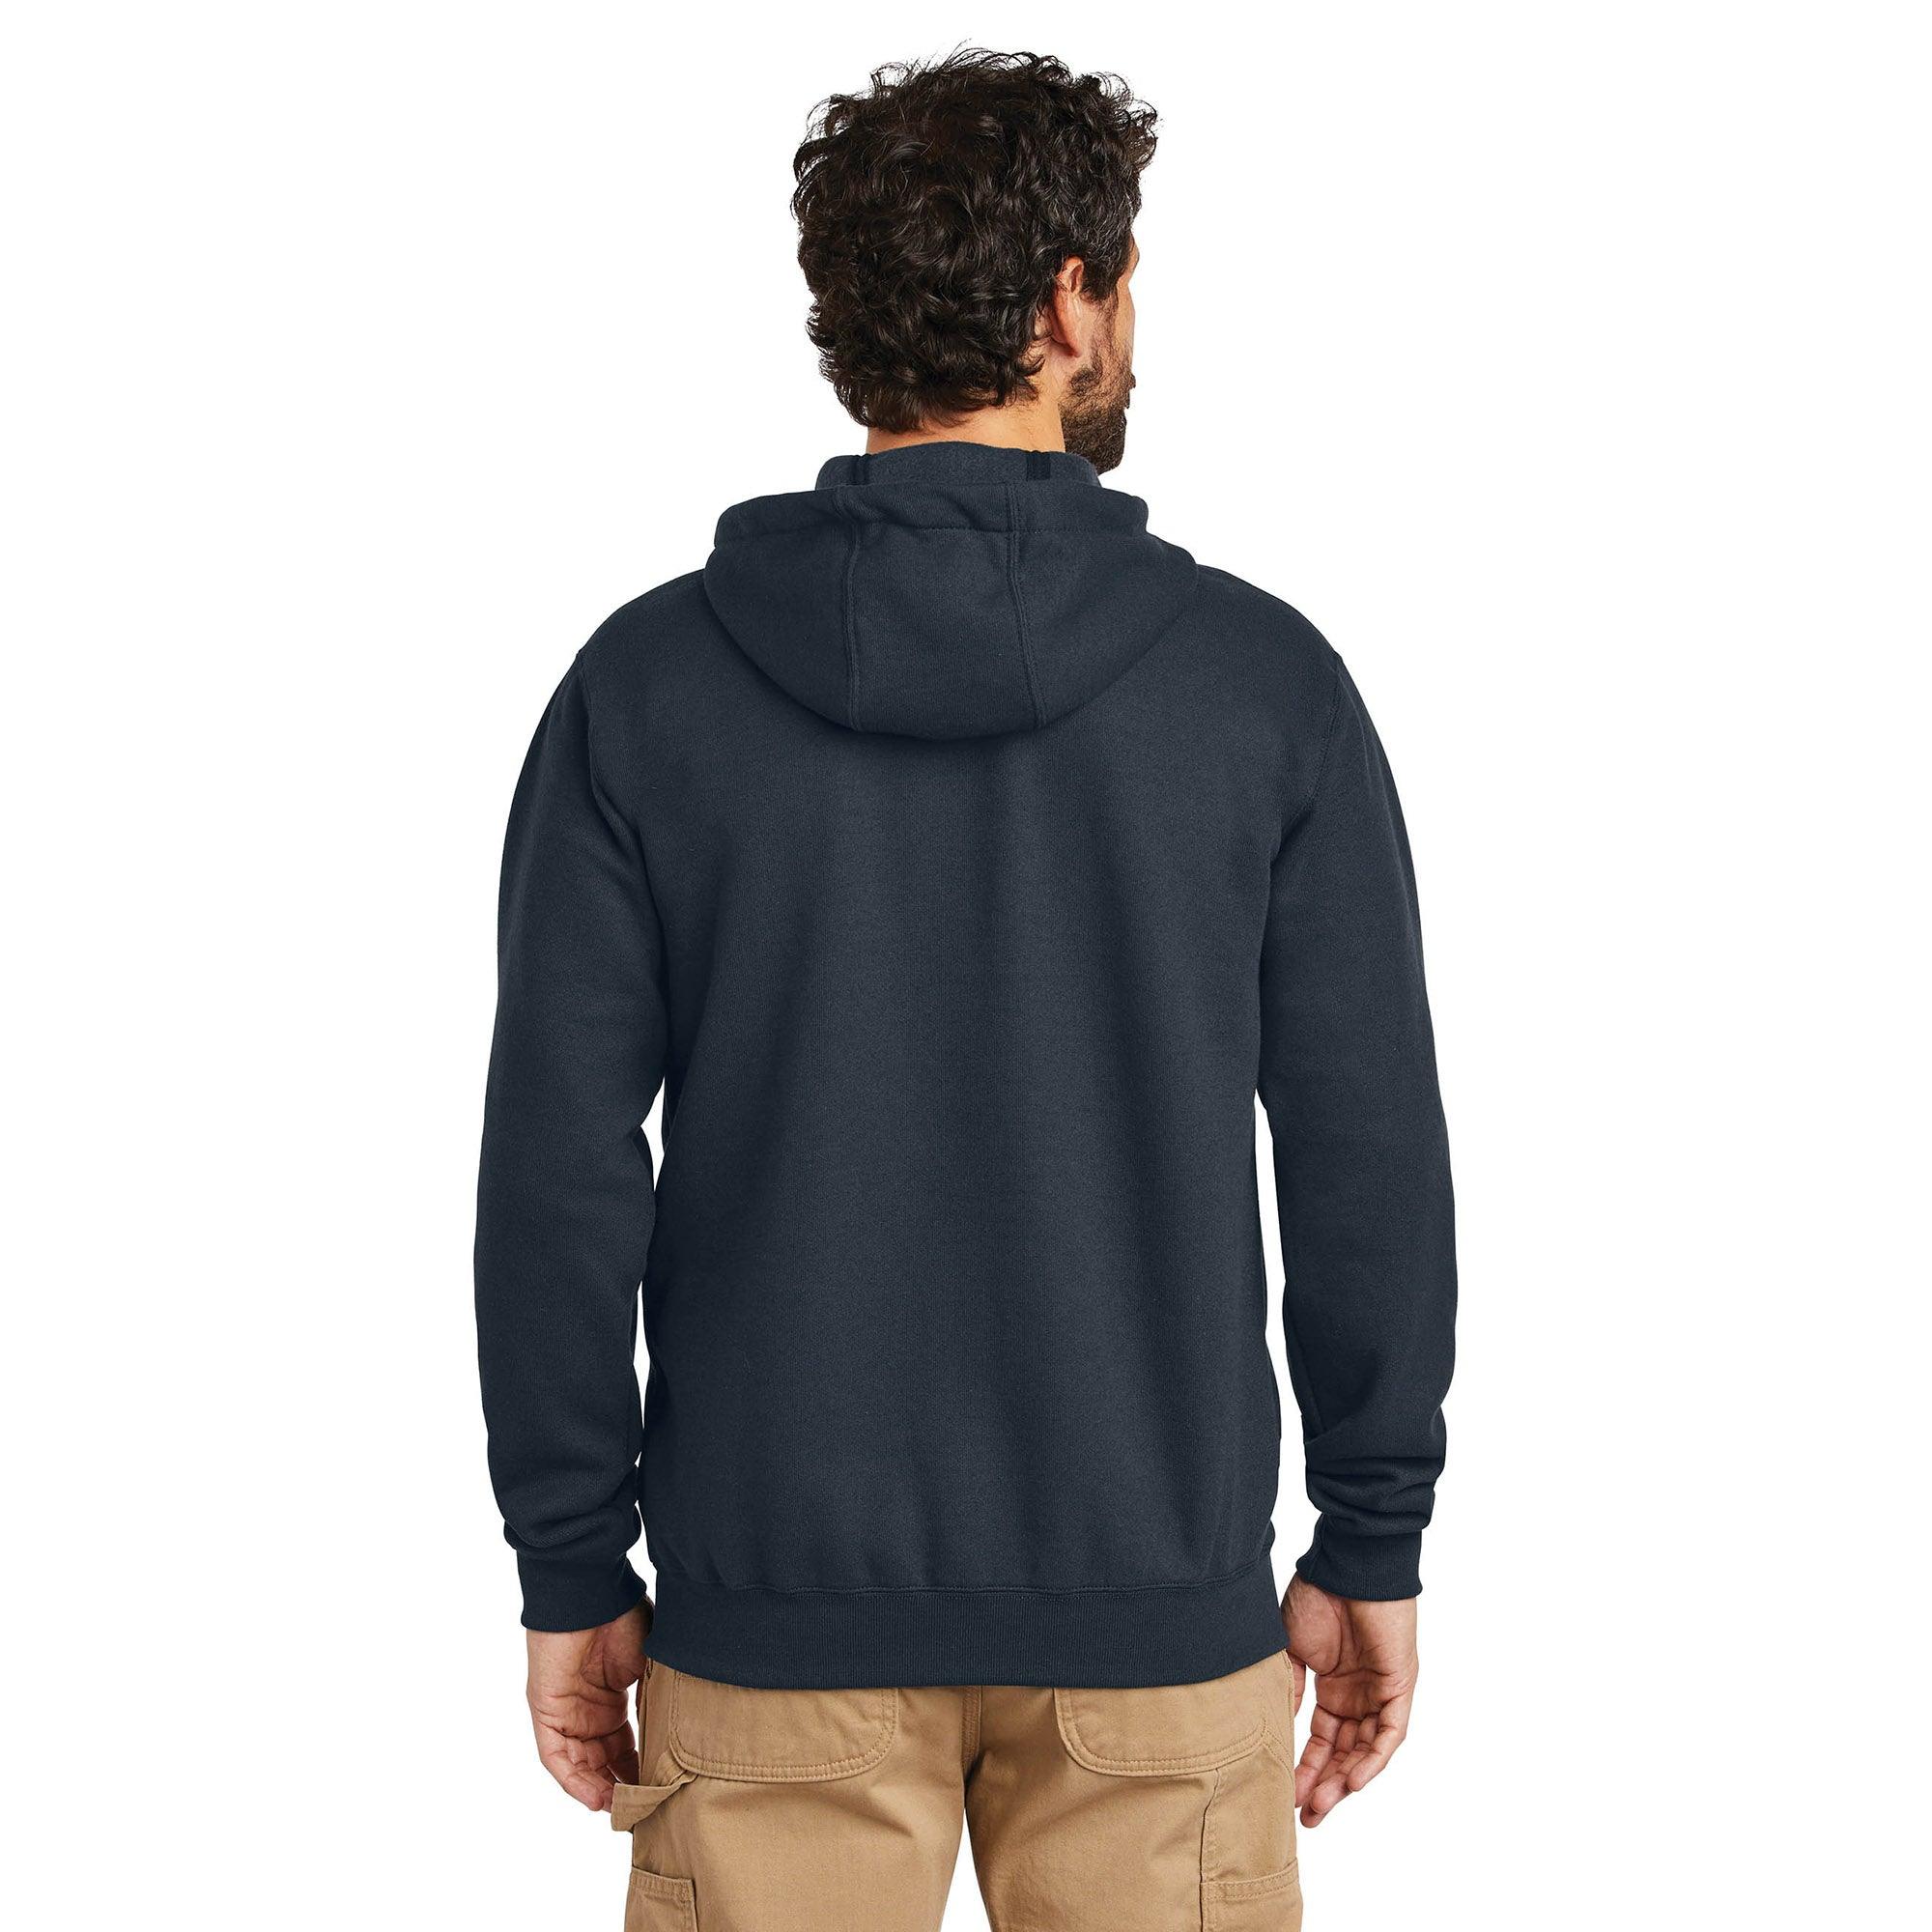 Fleece Hooded Zip Front Sweatshirt - New Navy - Purpose-Built / Home of the Trades